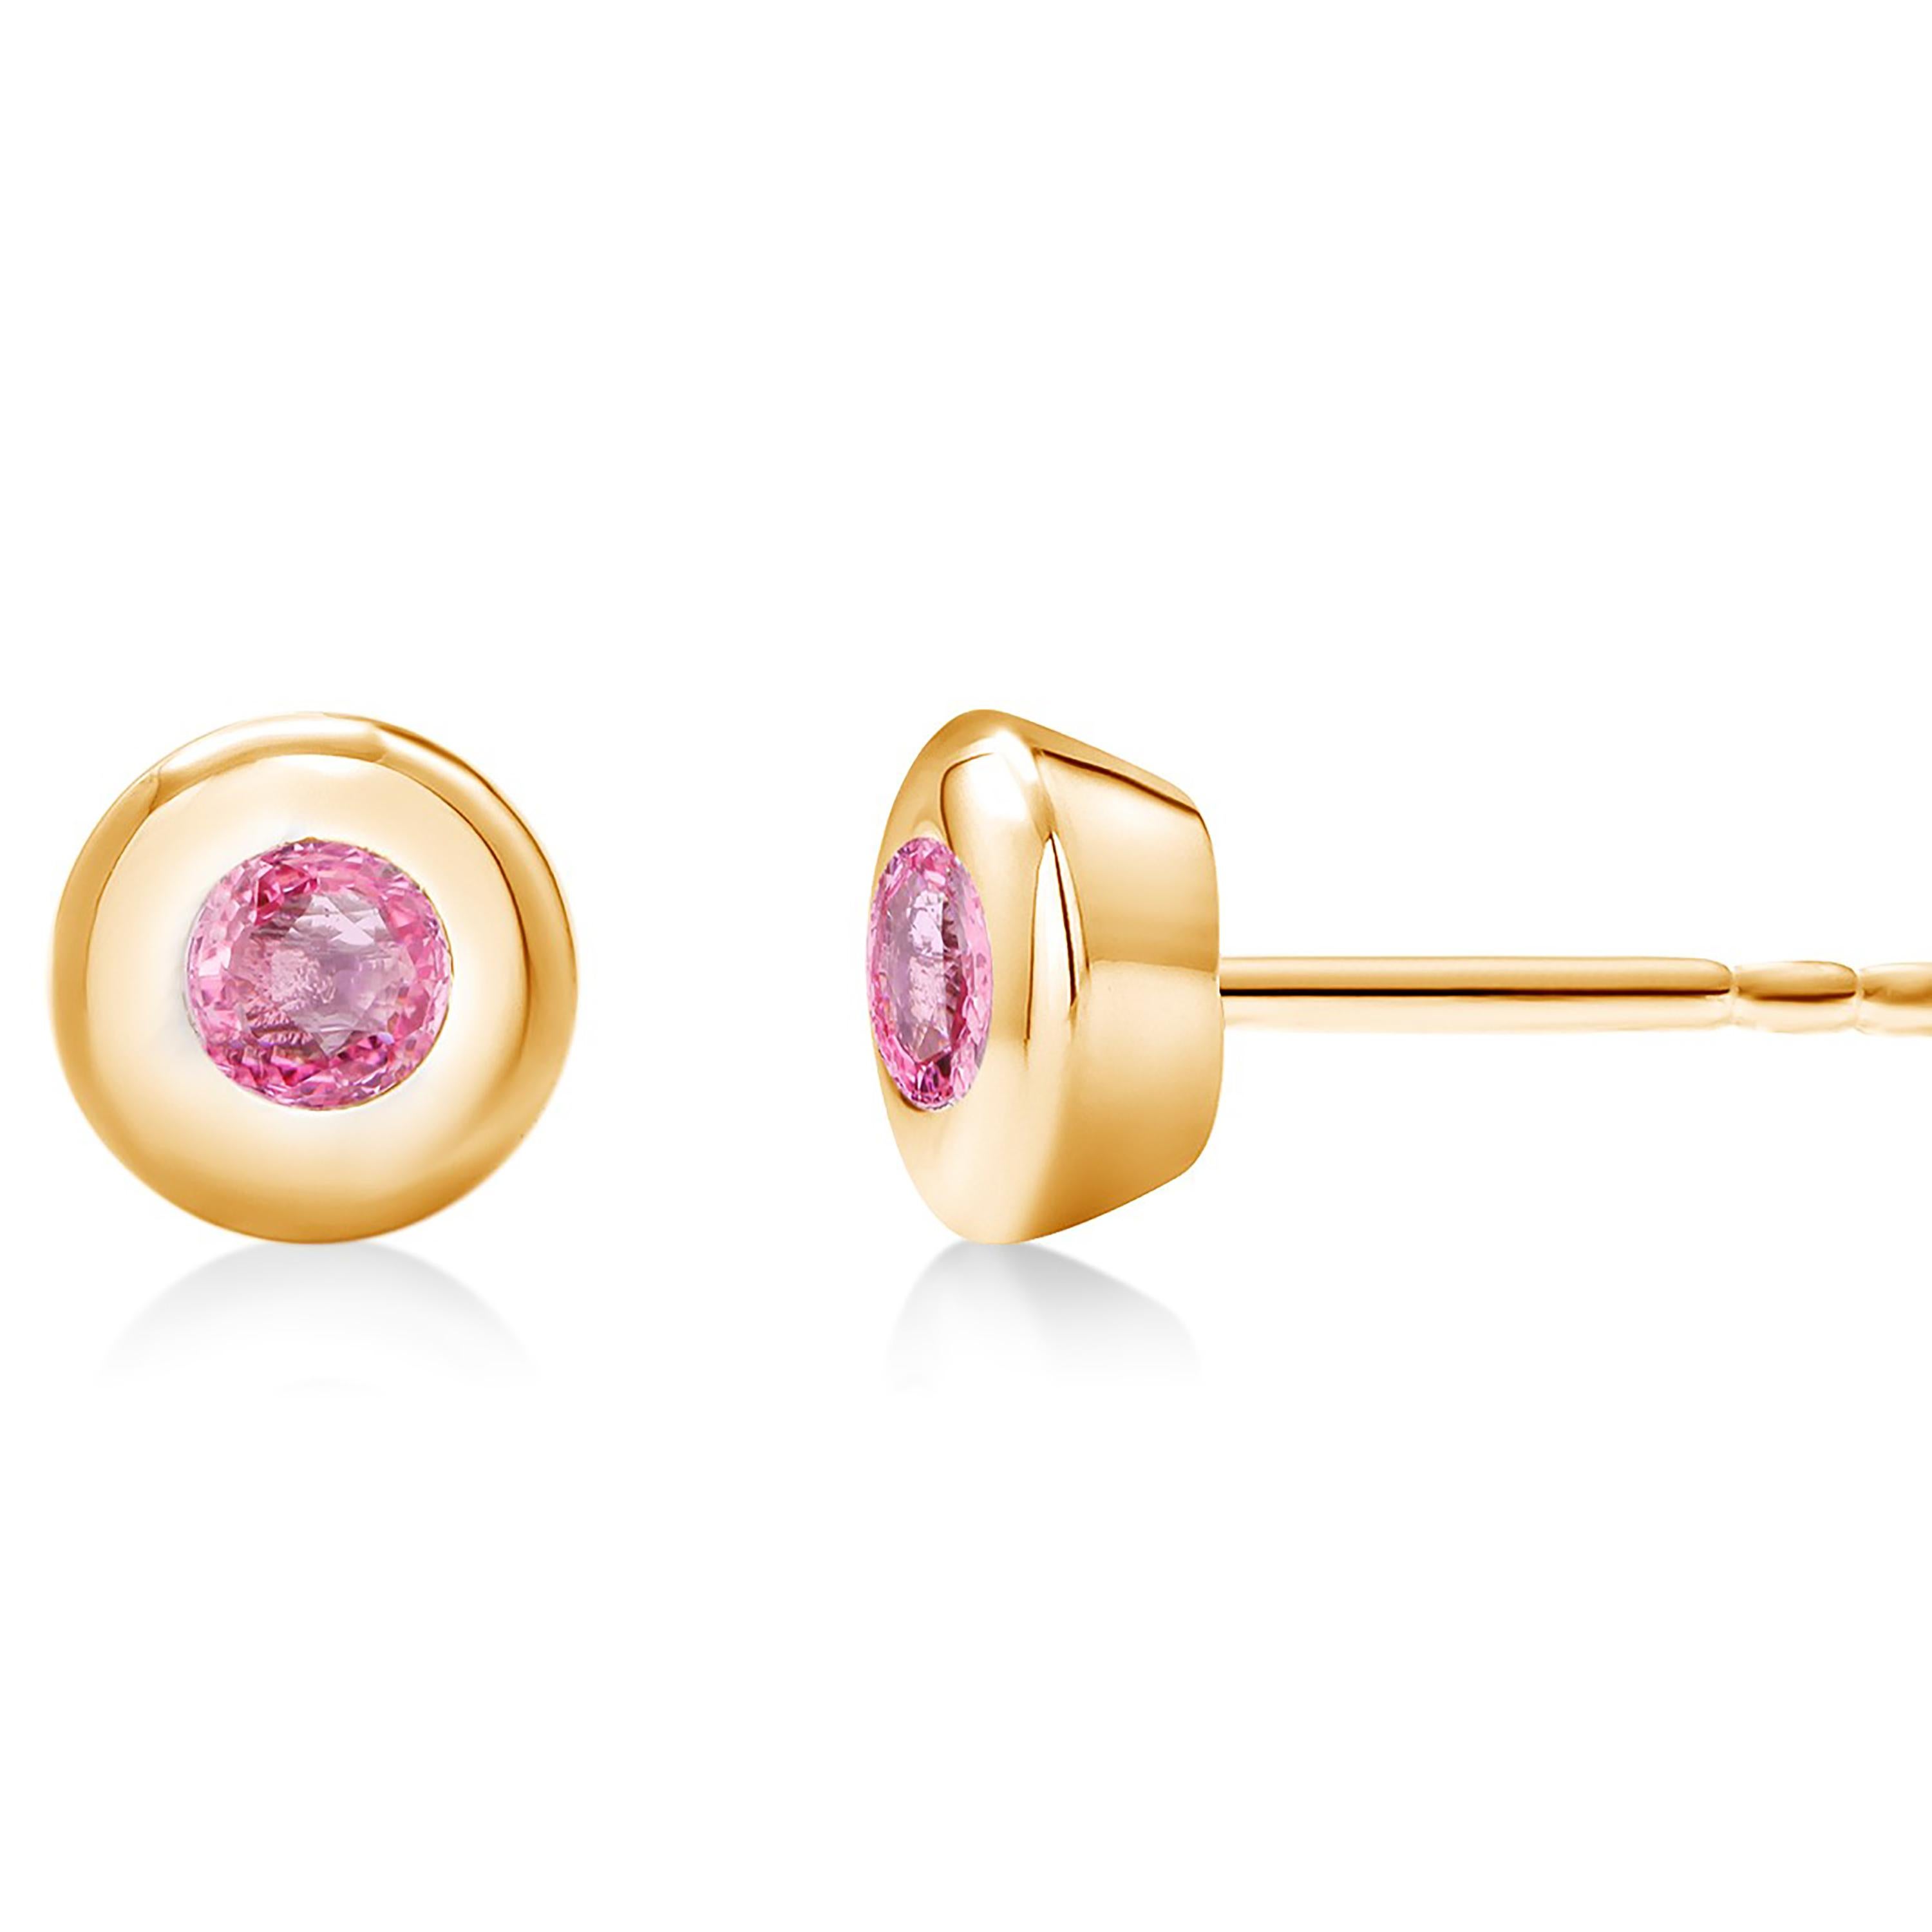 Round Cut 14 Karat Yellow Gold Bezel Set Pink Sapphire Stud Earrings Weighing 0.30 Carat